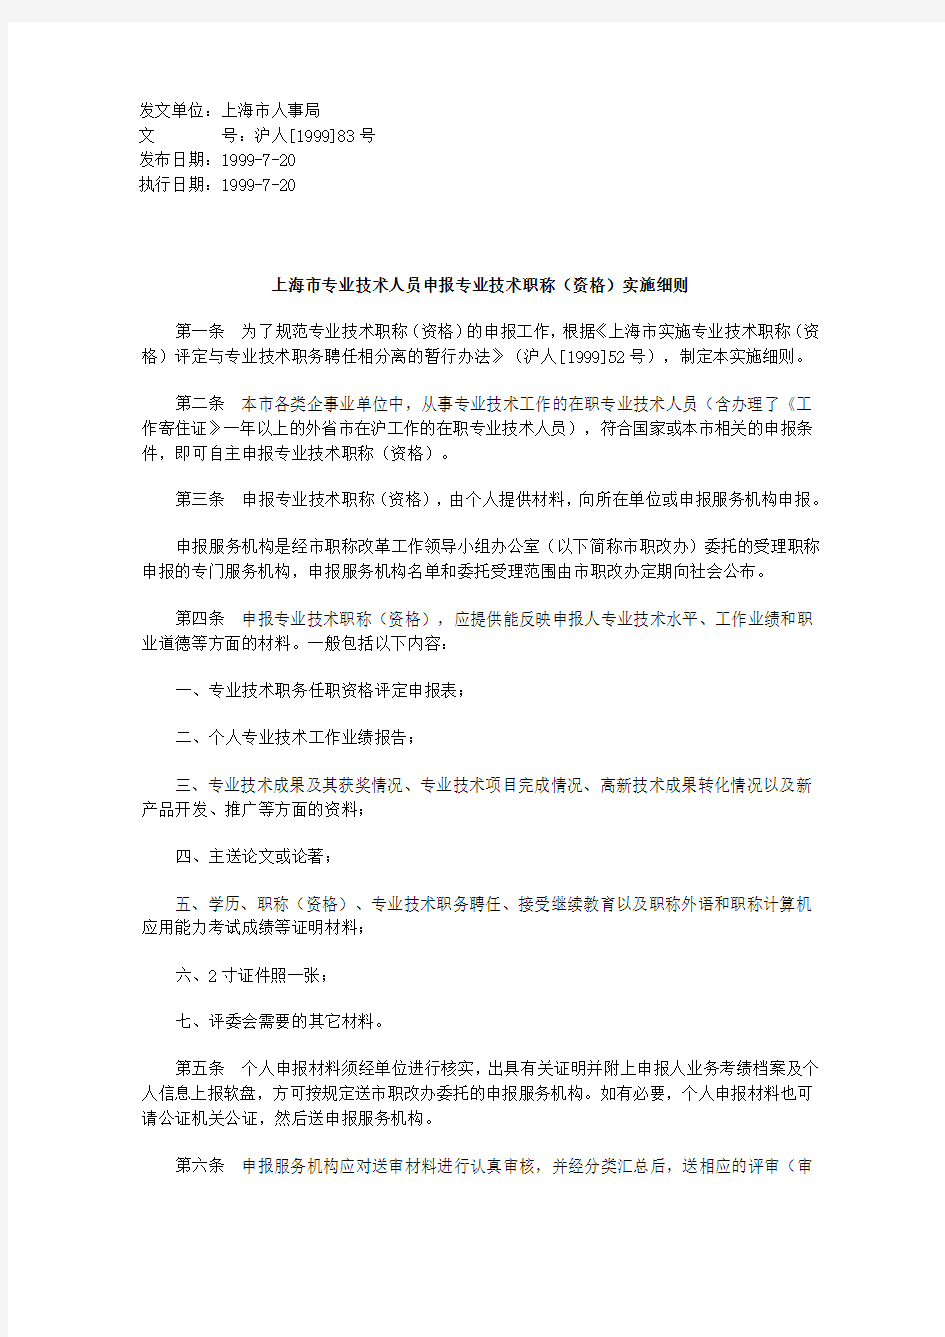 上海市专业技术人员申报专业技术职称(资格)实施细则